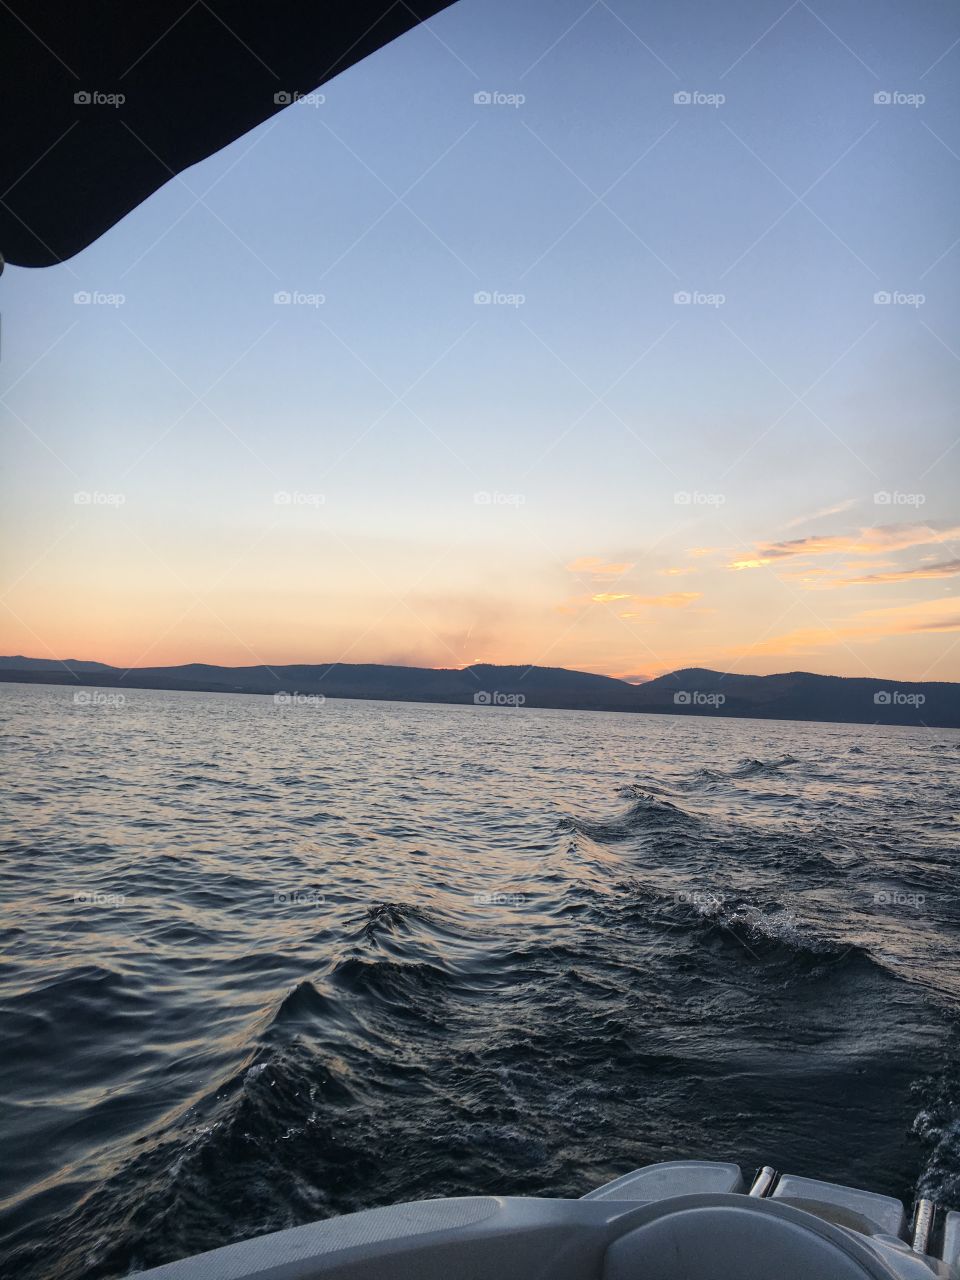 Sun set on a boat 